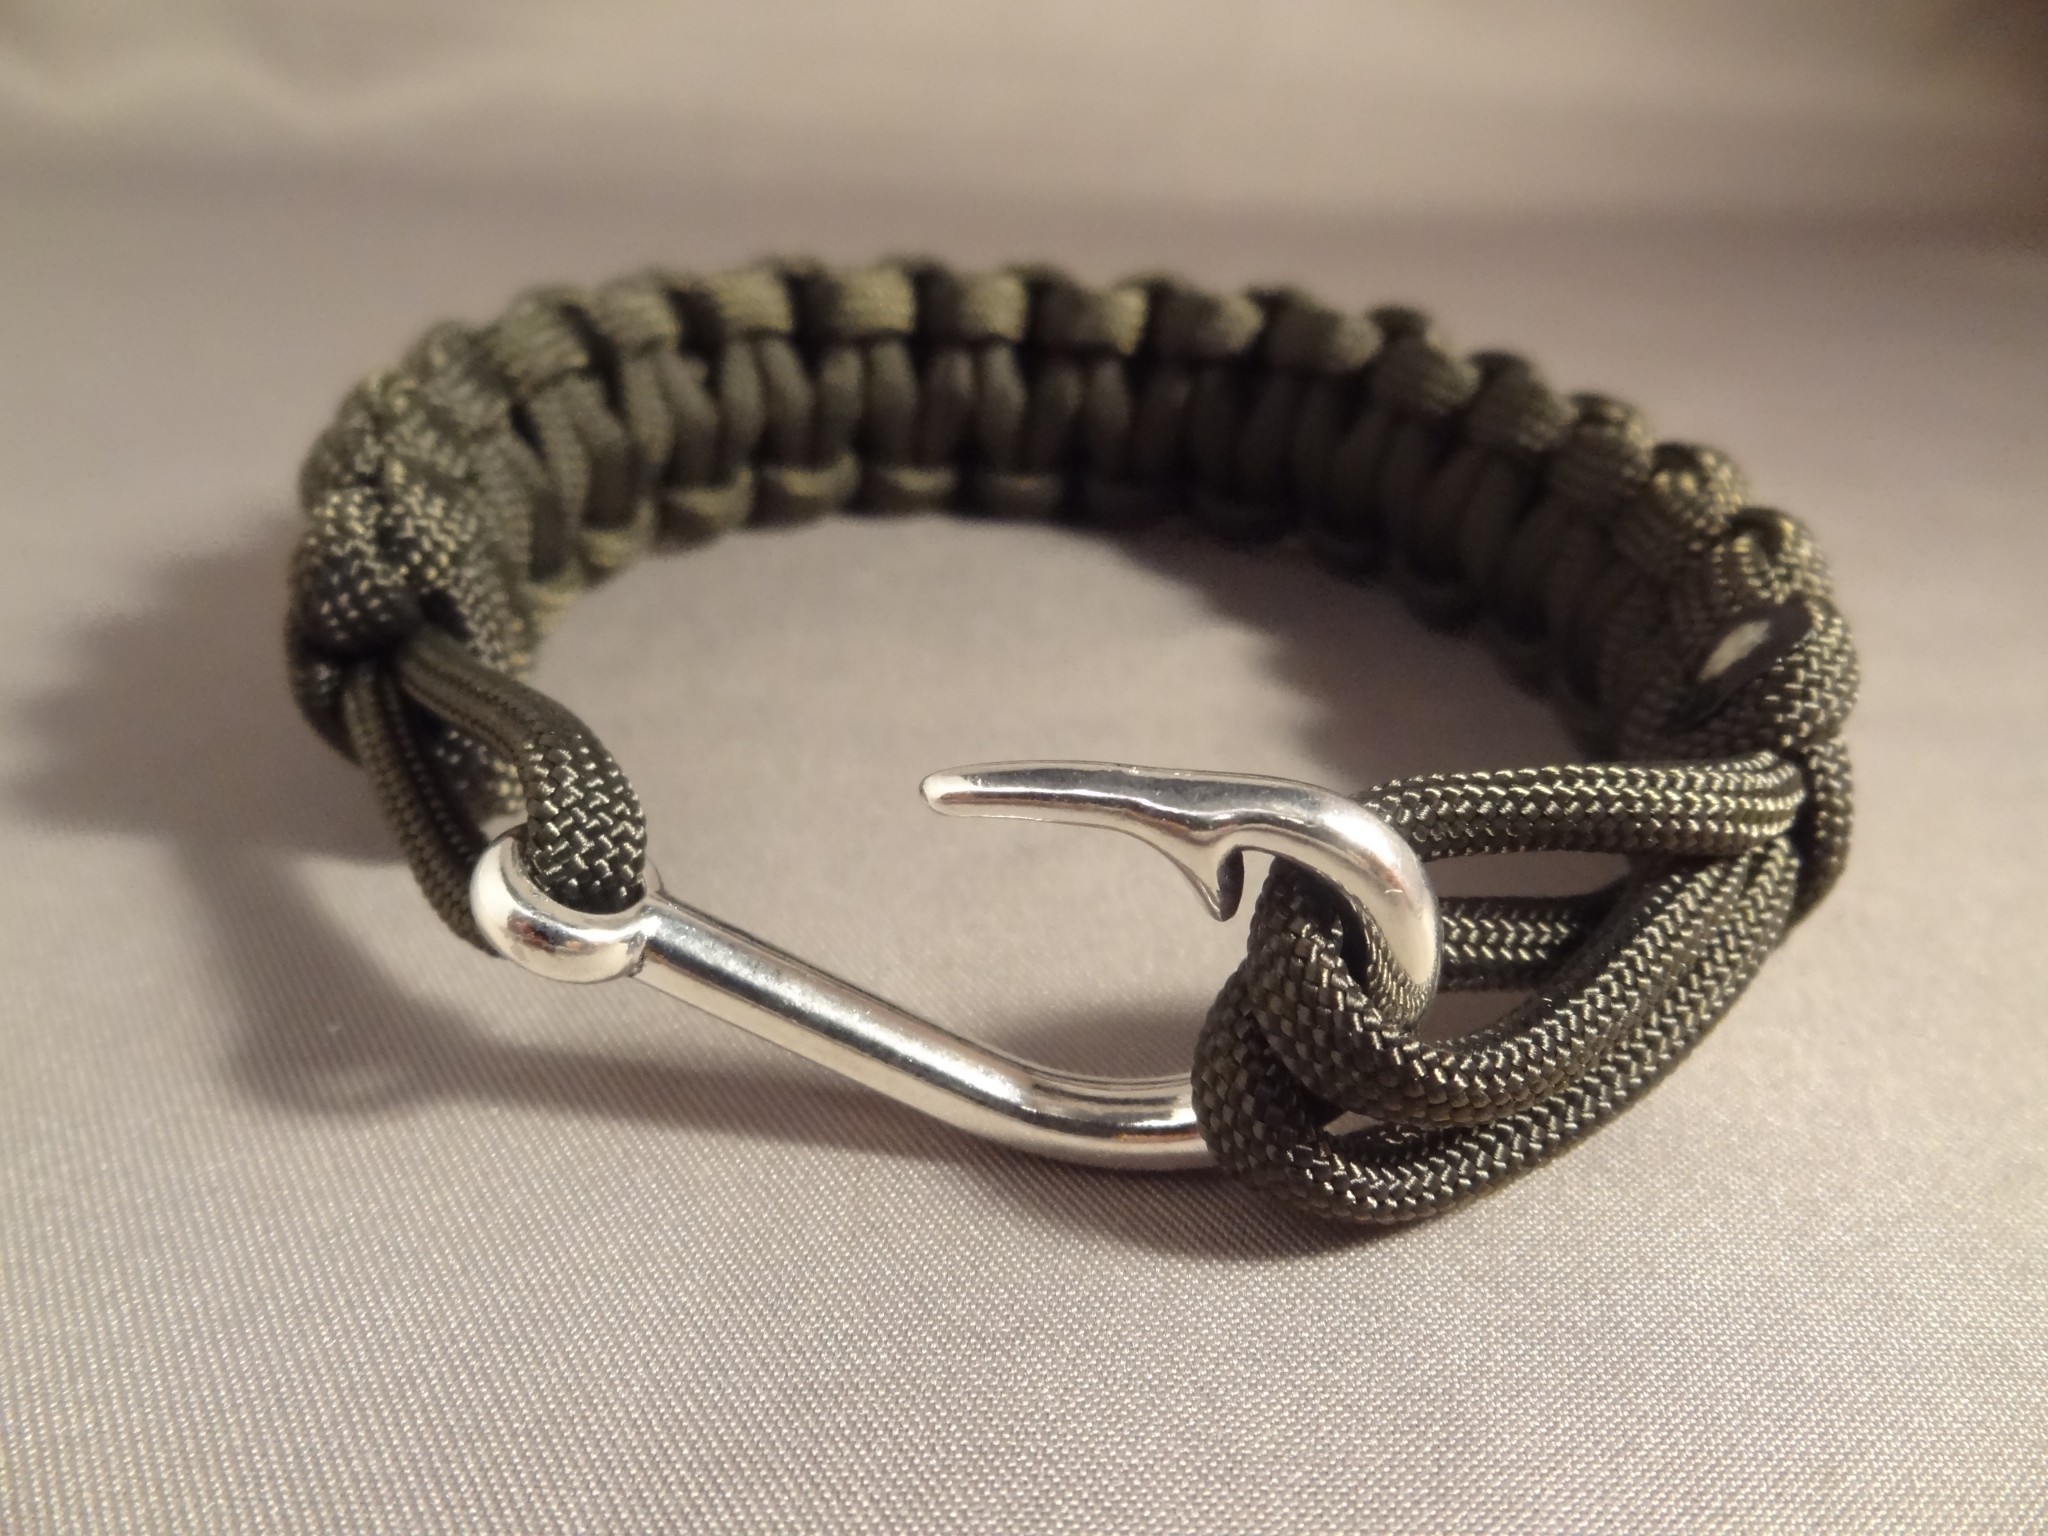 Fish Hook Clasp Paracord Bracelet